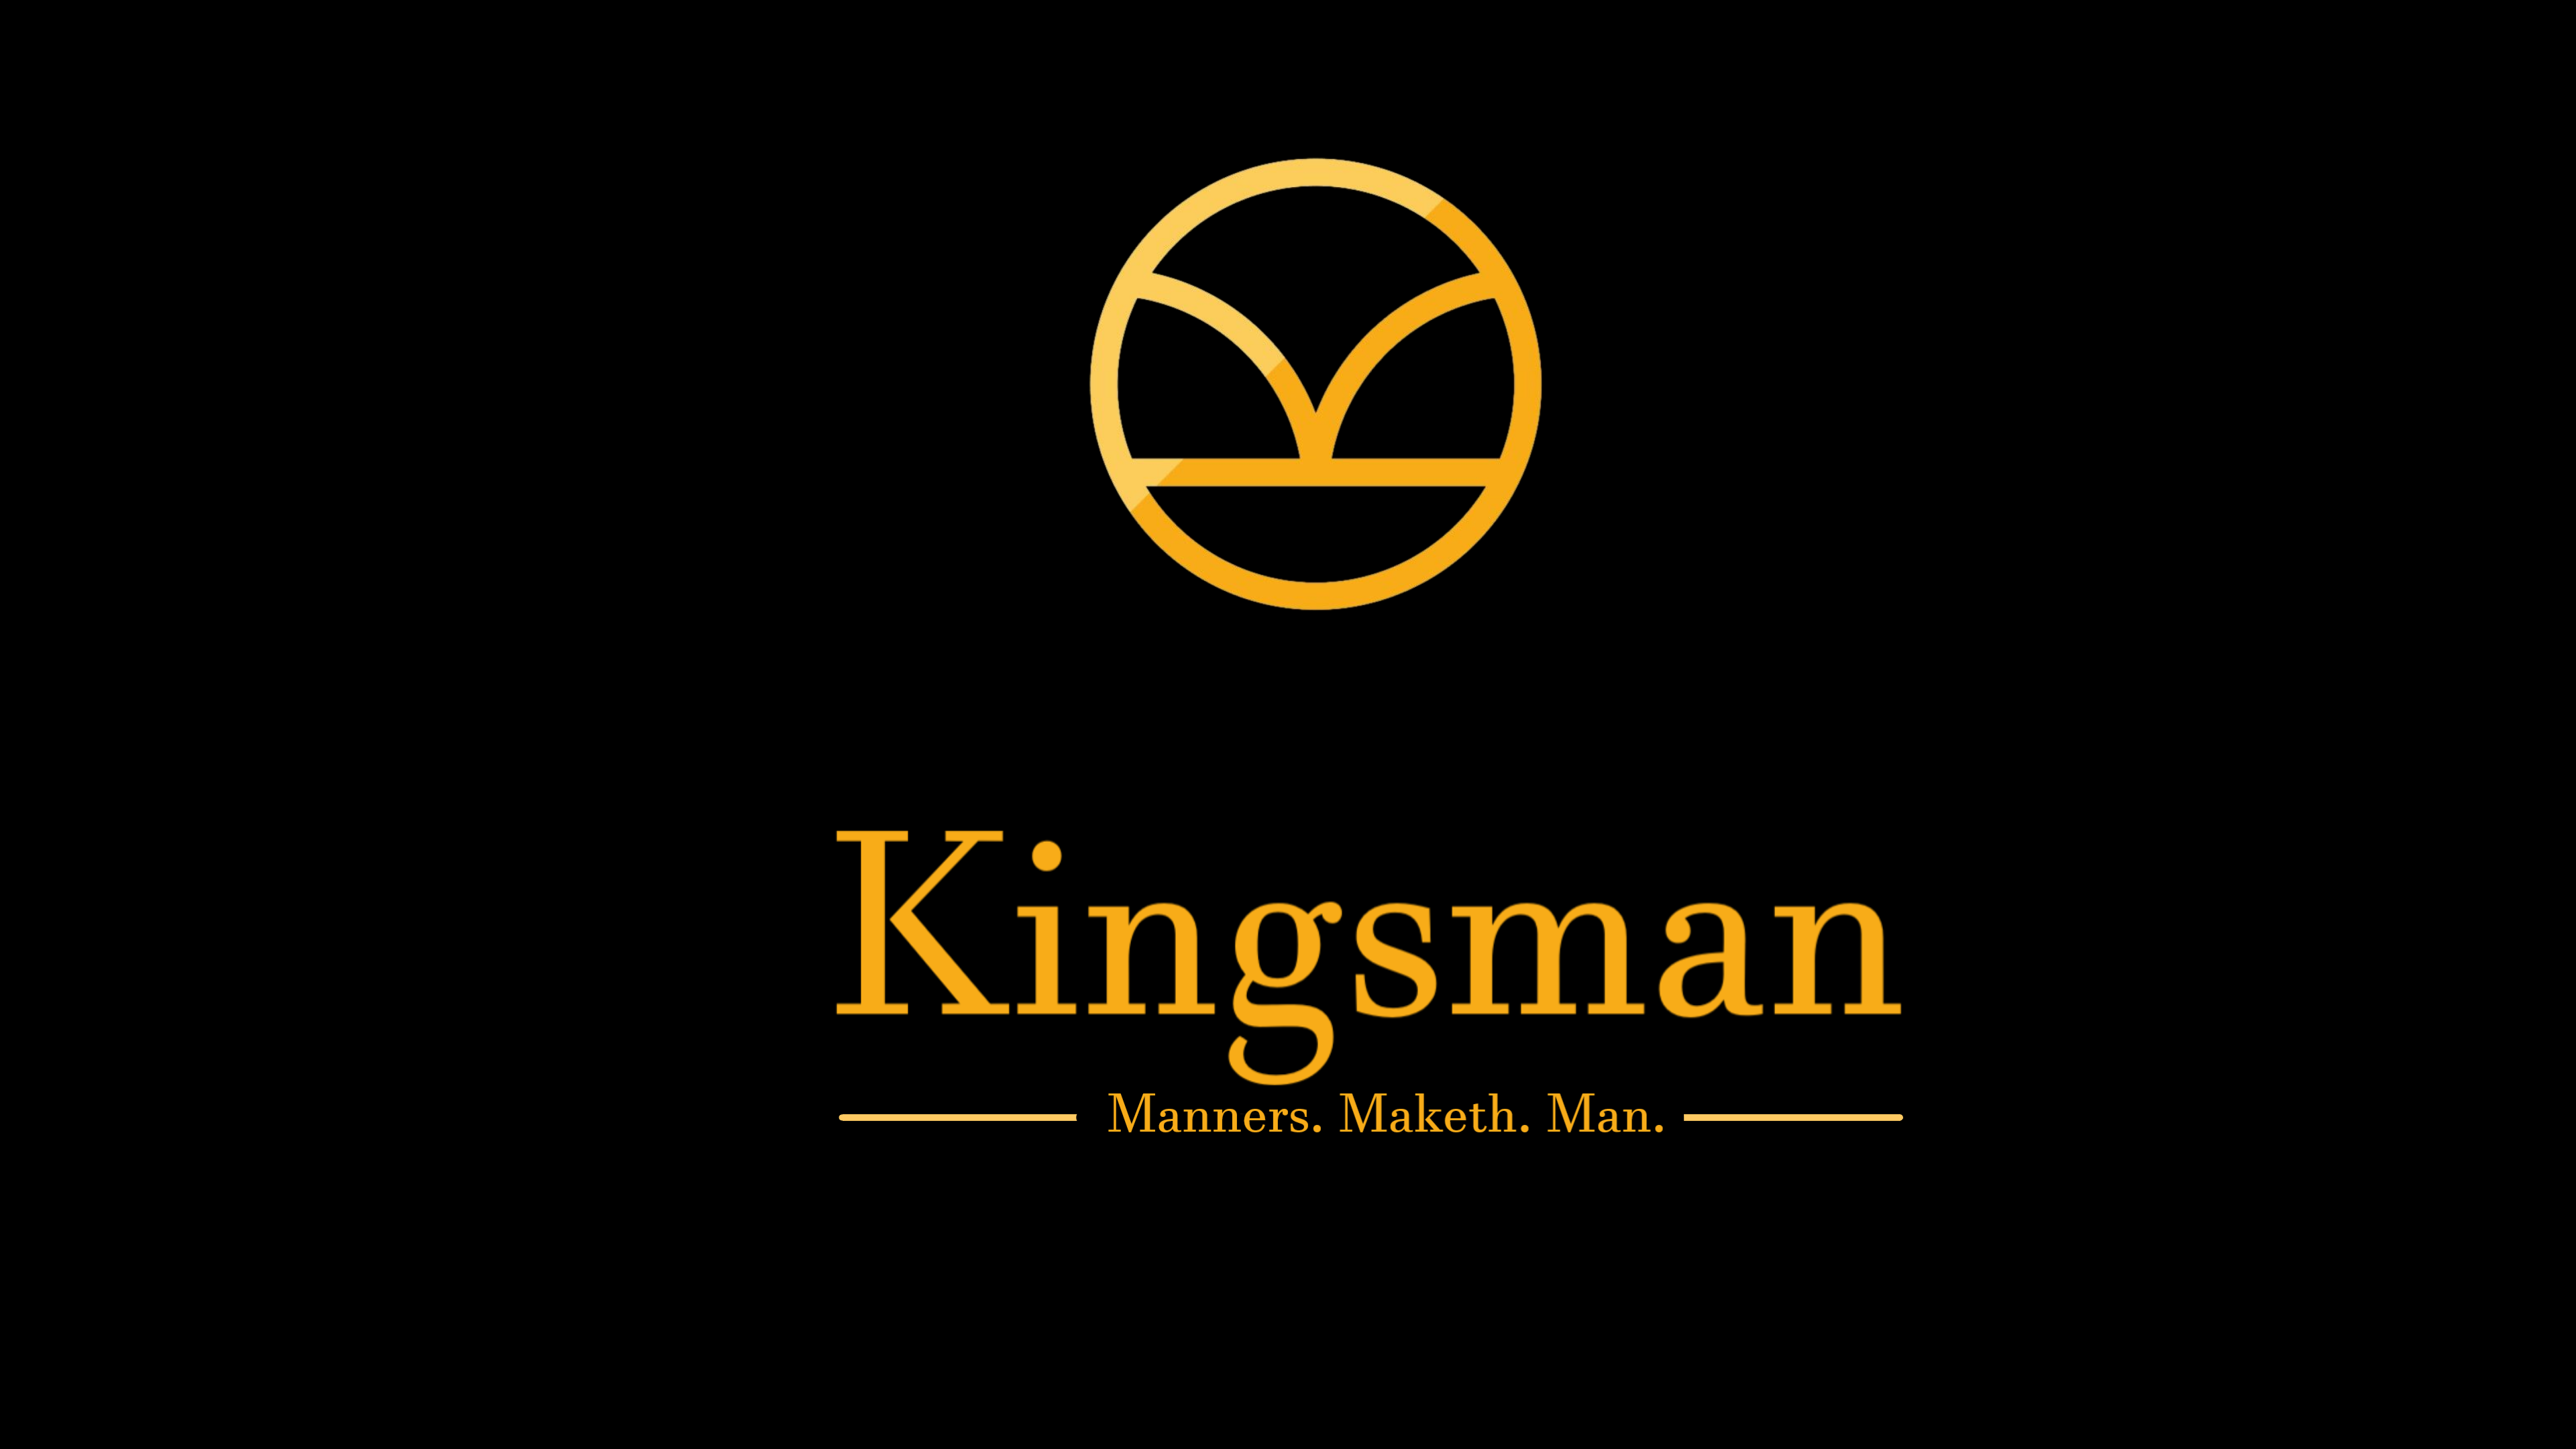 4K Kingsman Wallpaper, gentlemen!